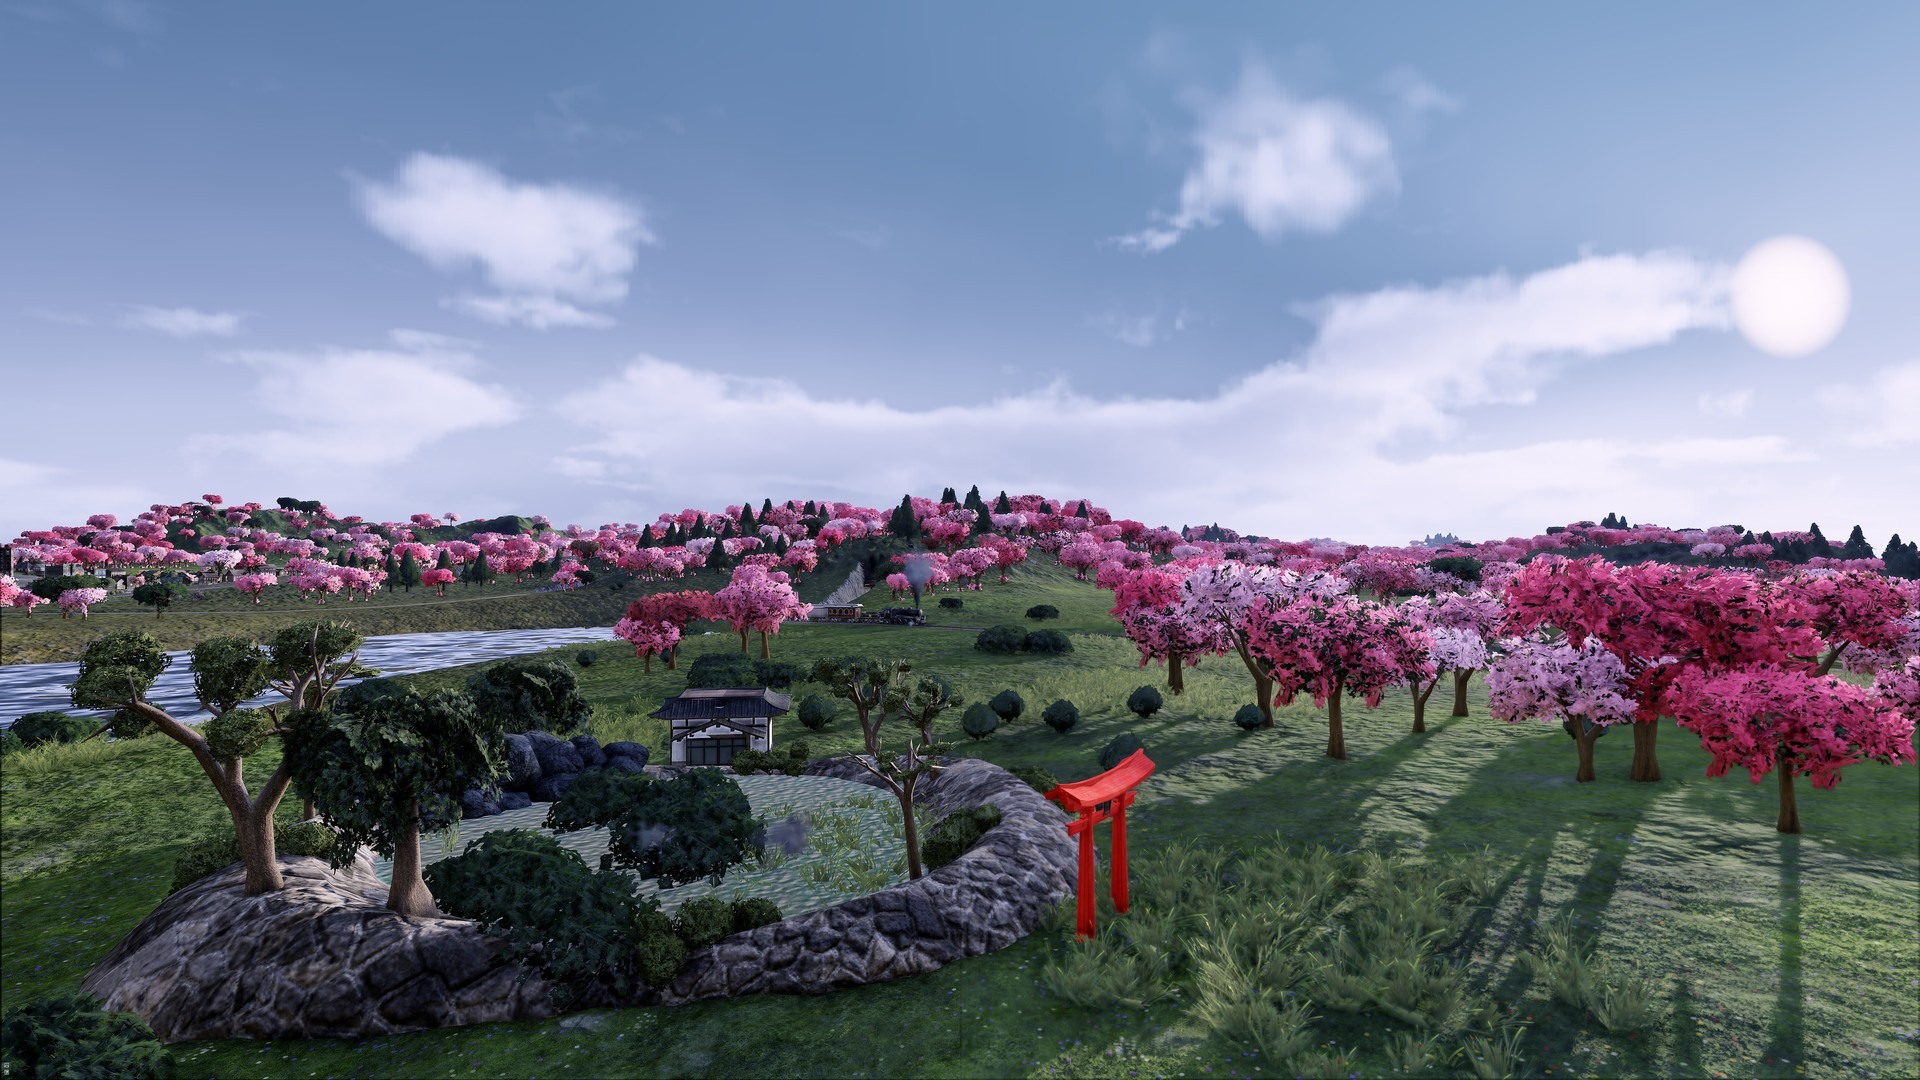 圖 《鐵路帝國》PS4繁體中文版追加內容《Jap